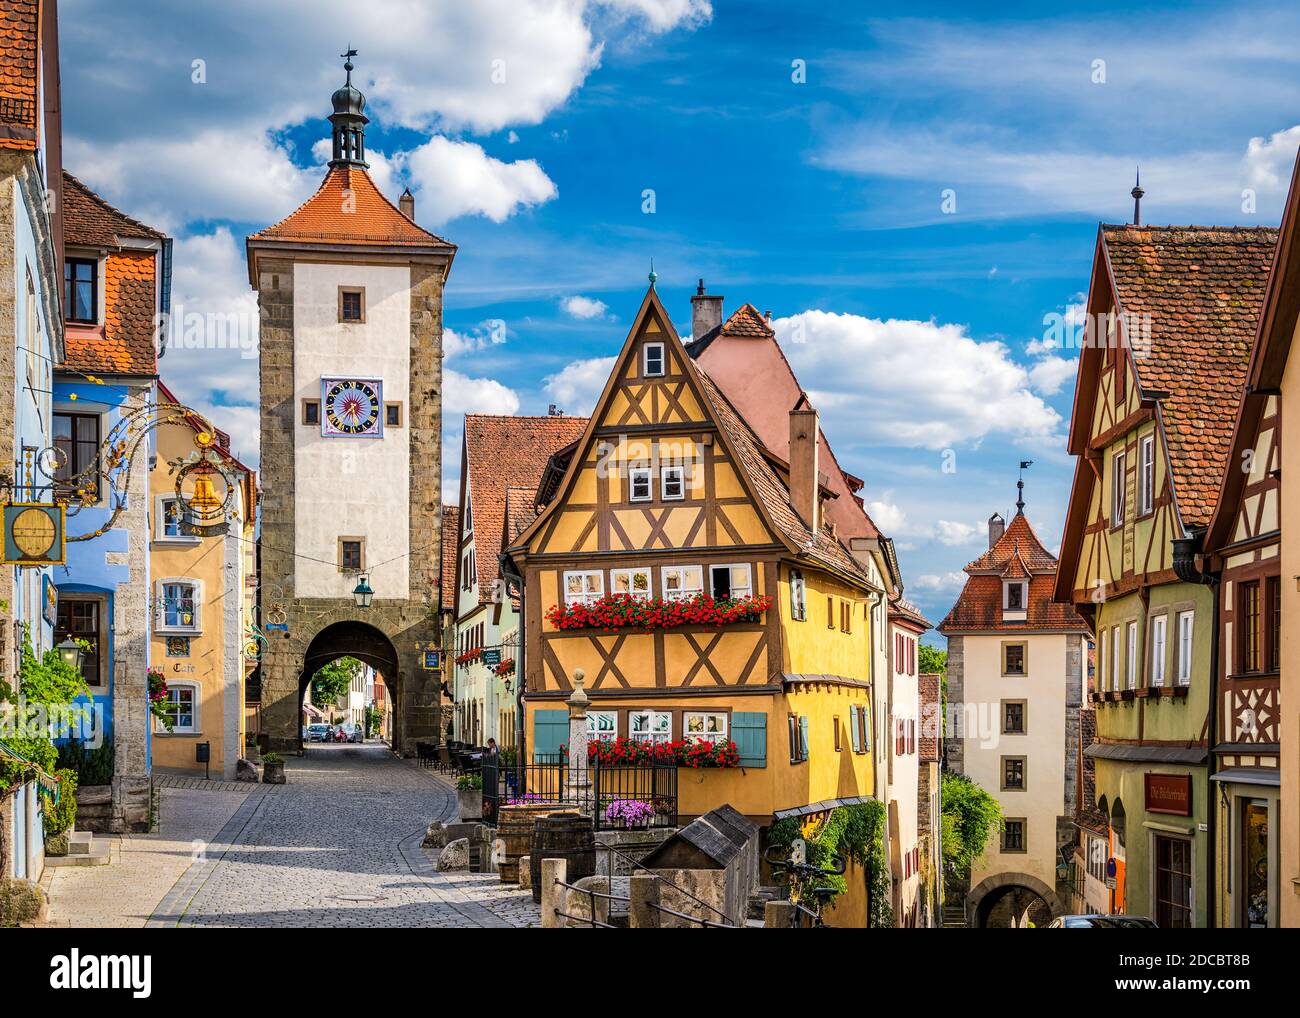 Ville médiévale de Rothenburg ob der Tauber, Allemagne Banque D'Images